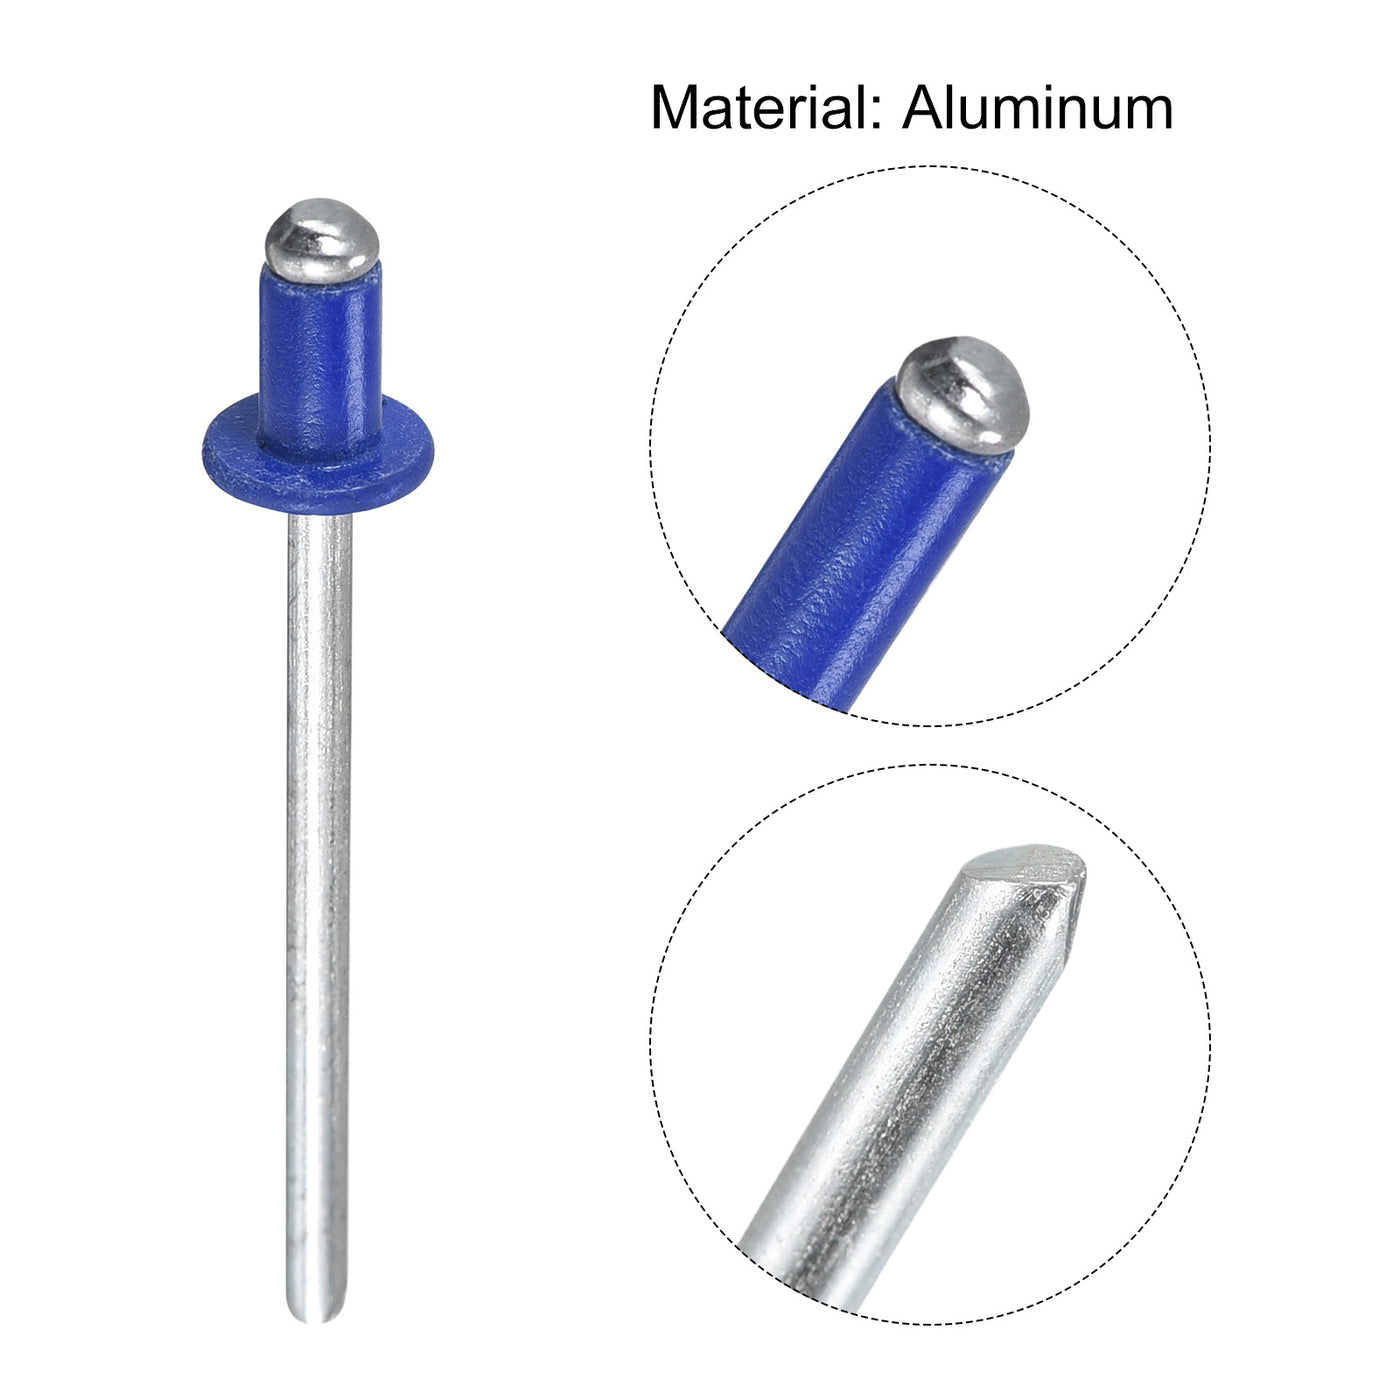 uxcell Uxcell Aluminum Blind Rivets, 3.2mm x 5mm Open End Flat Round Head Rivet, Blue 200 Pcs